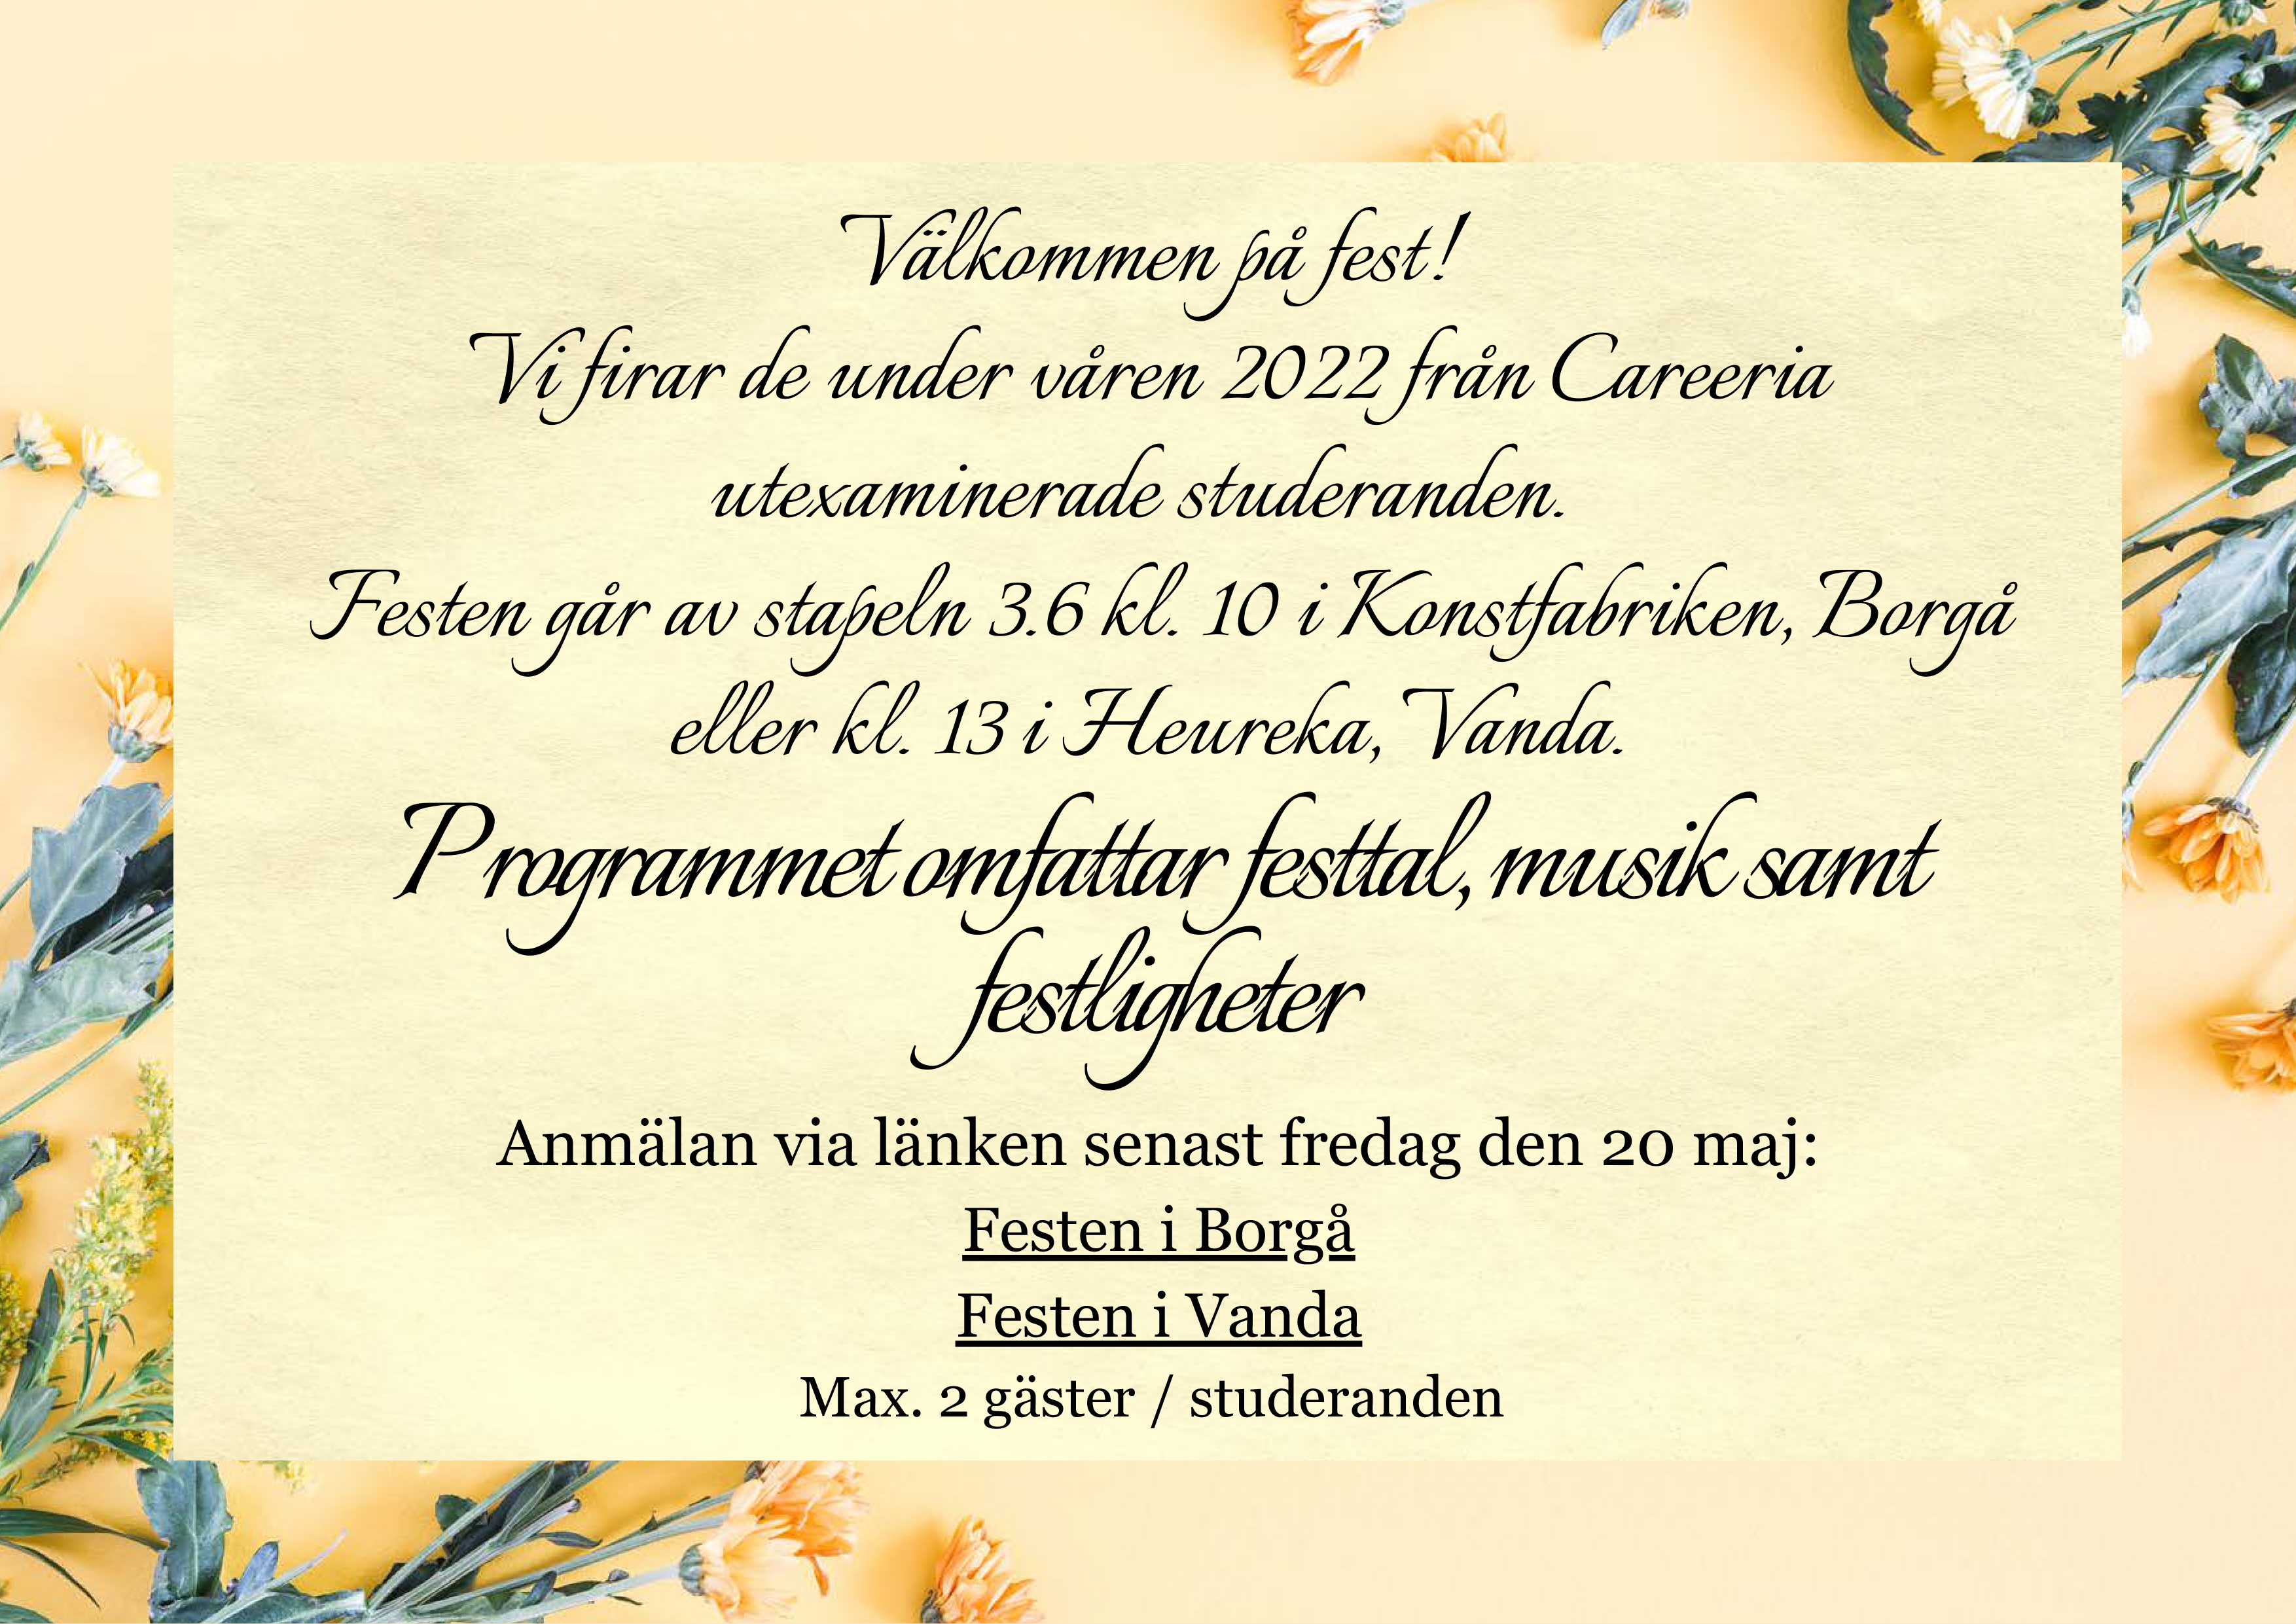 Ruotsinkielinen kutsu valmistujaisjuhlaan 3.6.2022.